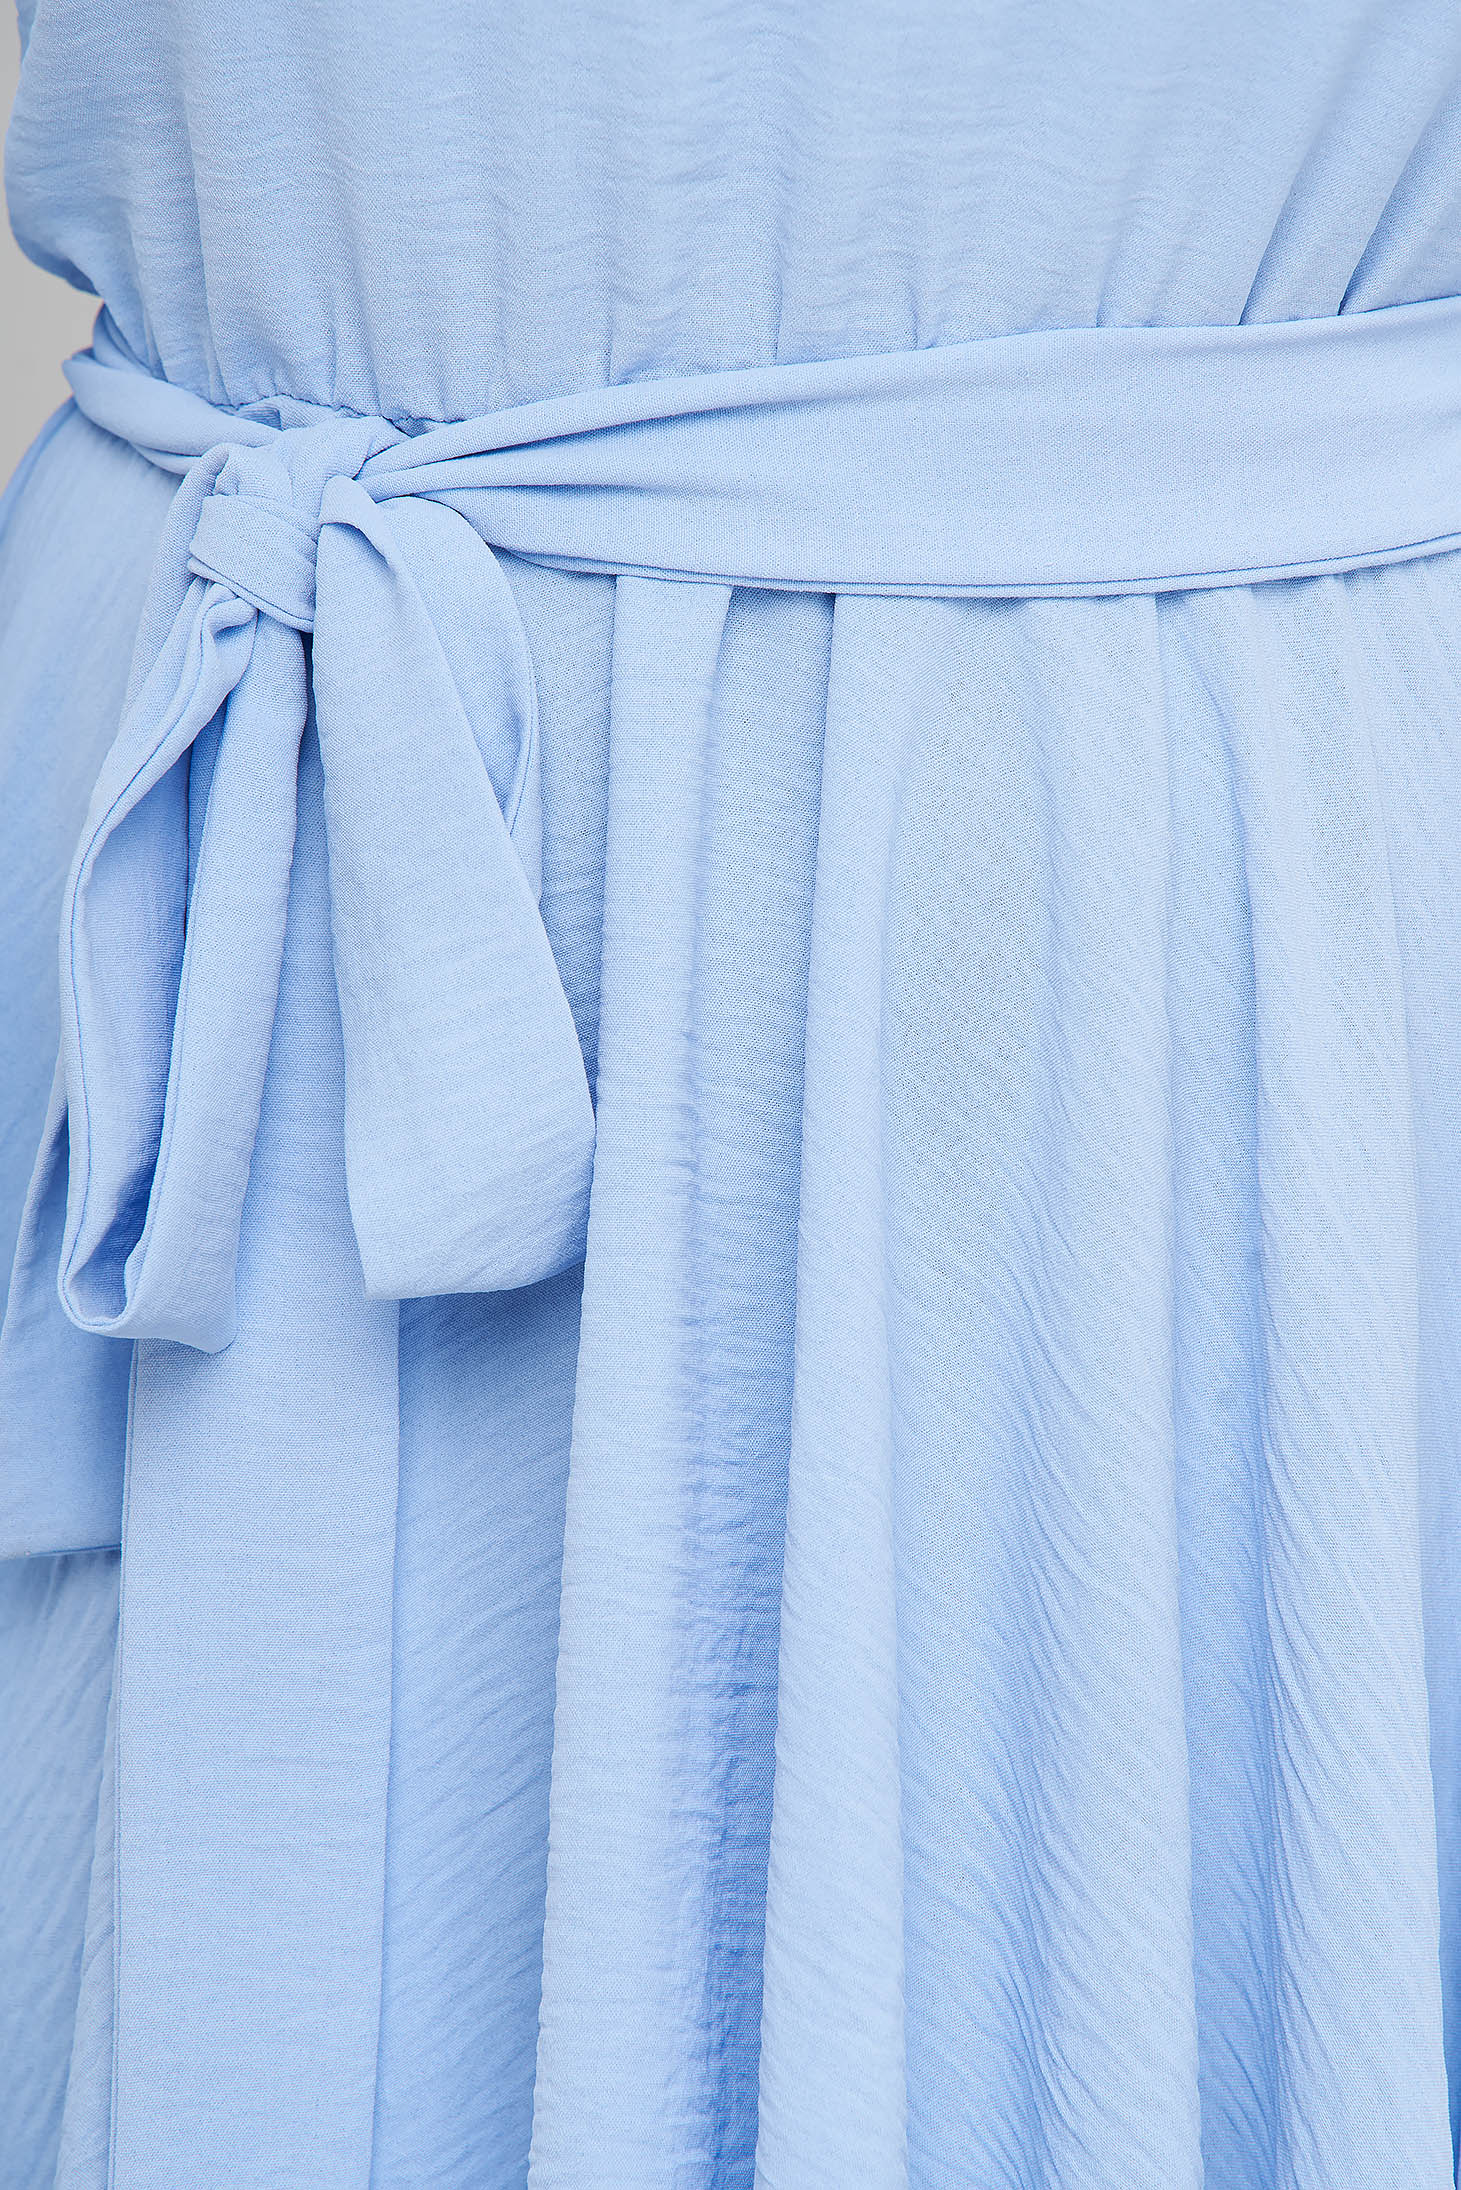 Rochie din georgette albastru-deschis scurta in clos cu elastic in talie si maneci bufante - StarShinerS 4 - StarShinerS.ro